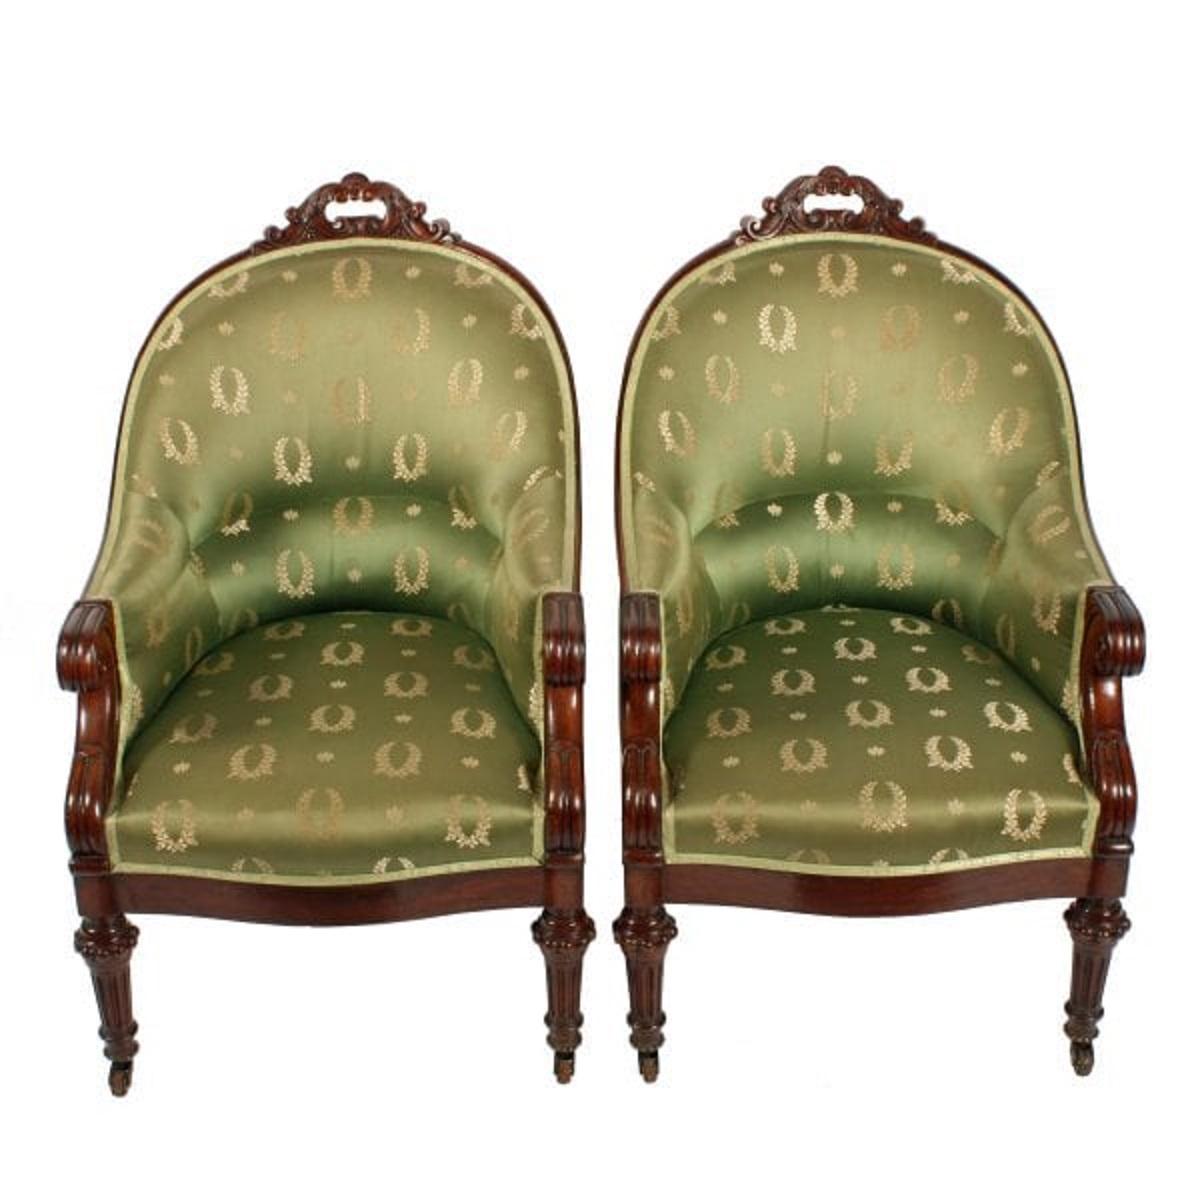 Ein Paar Bibliotheksstühle aus Mahagoni des frühen 19. Jahrhunderts.

Die Stühle haben eine hohe, geschwungene Rückenlehne mit einer geschnitzten Schneckenverzierung auf der Oberseite. Schöne spitz zulaufende kannelierte Vorderbeine mit Rollen und